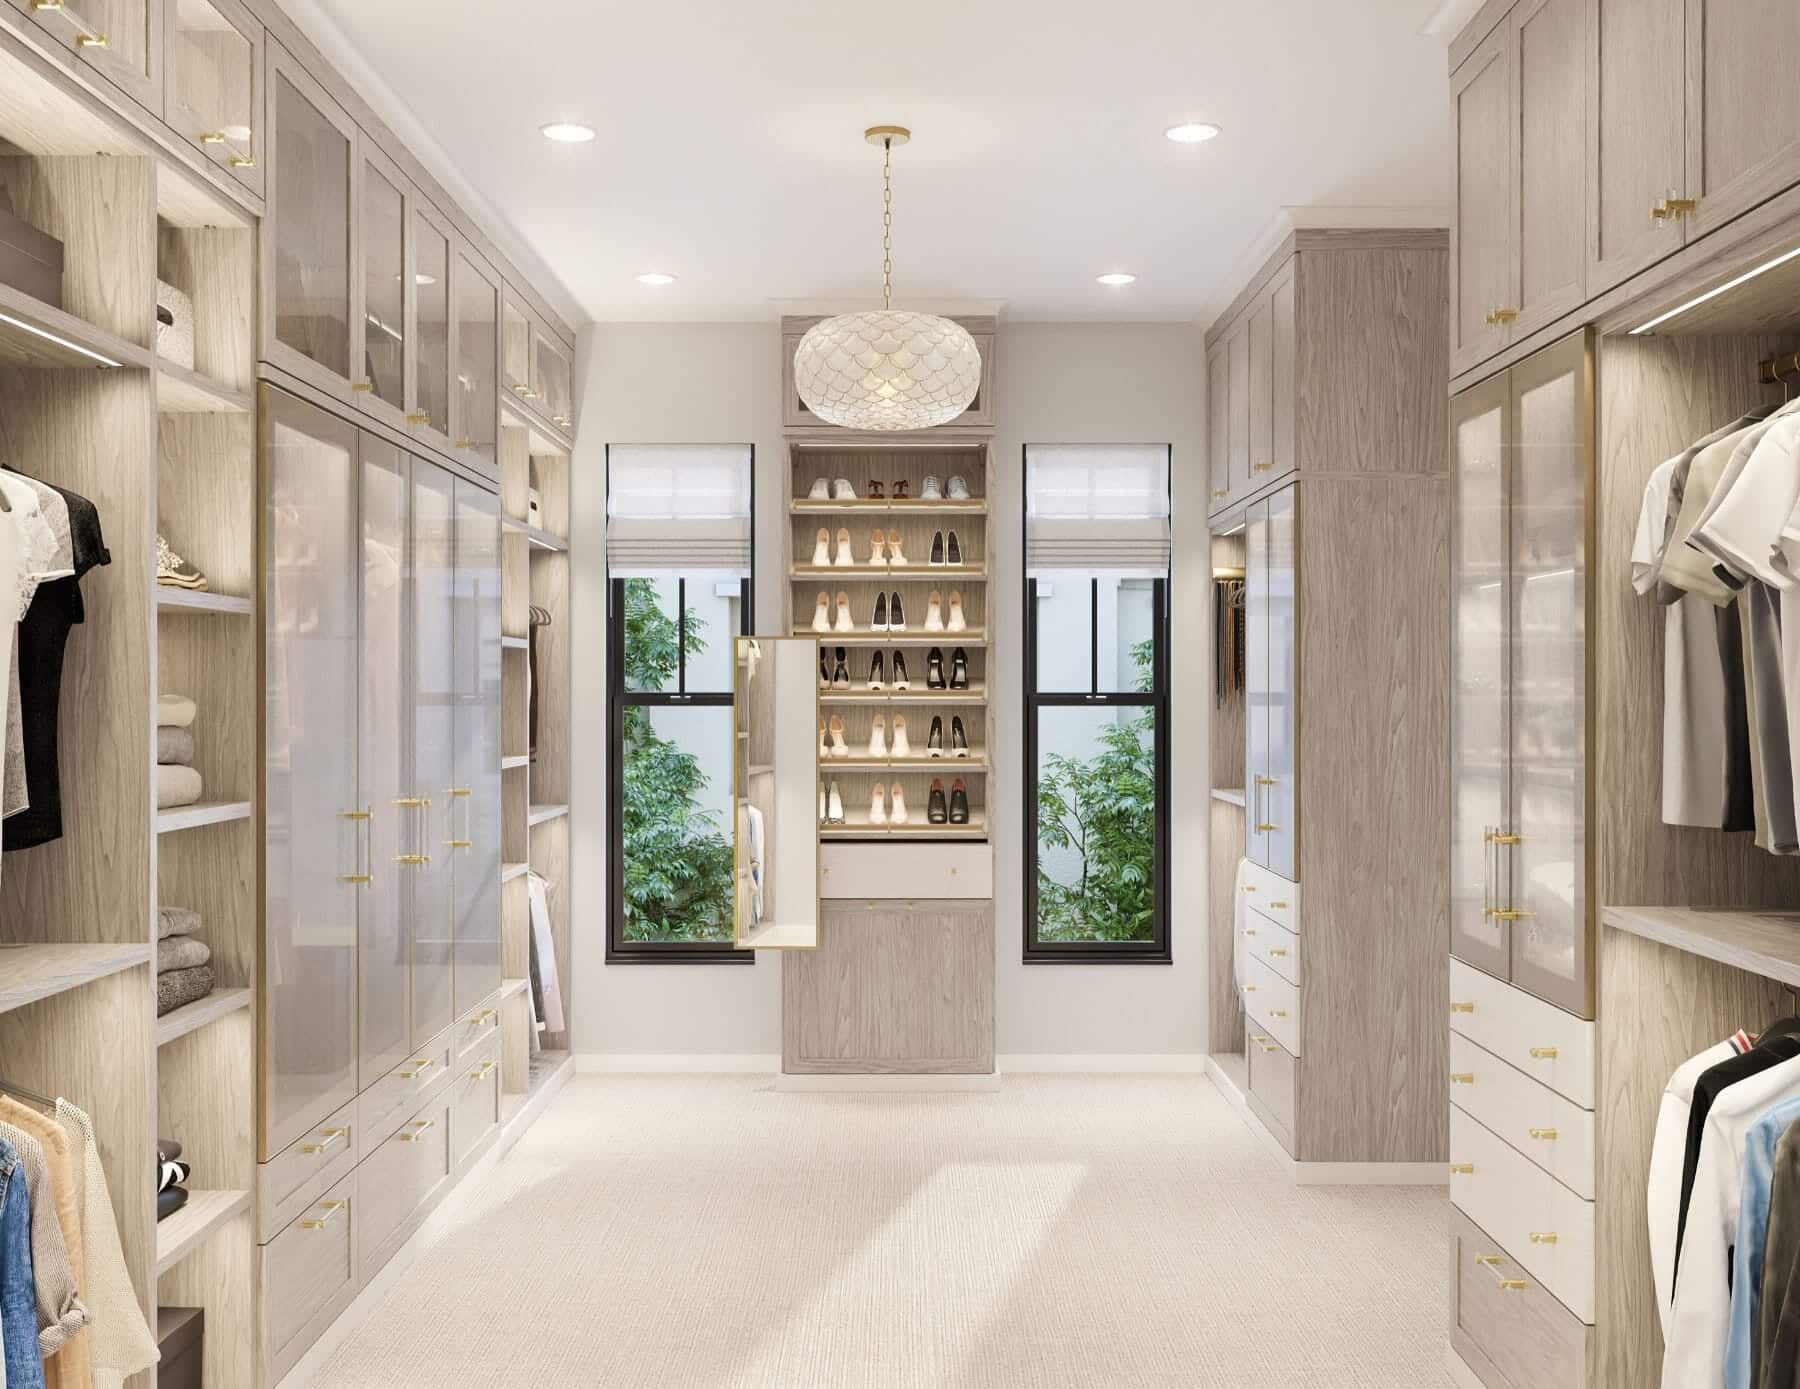 The Luxury Closet Review 2023 - Legit or Not? – LegitGrails